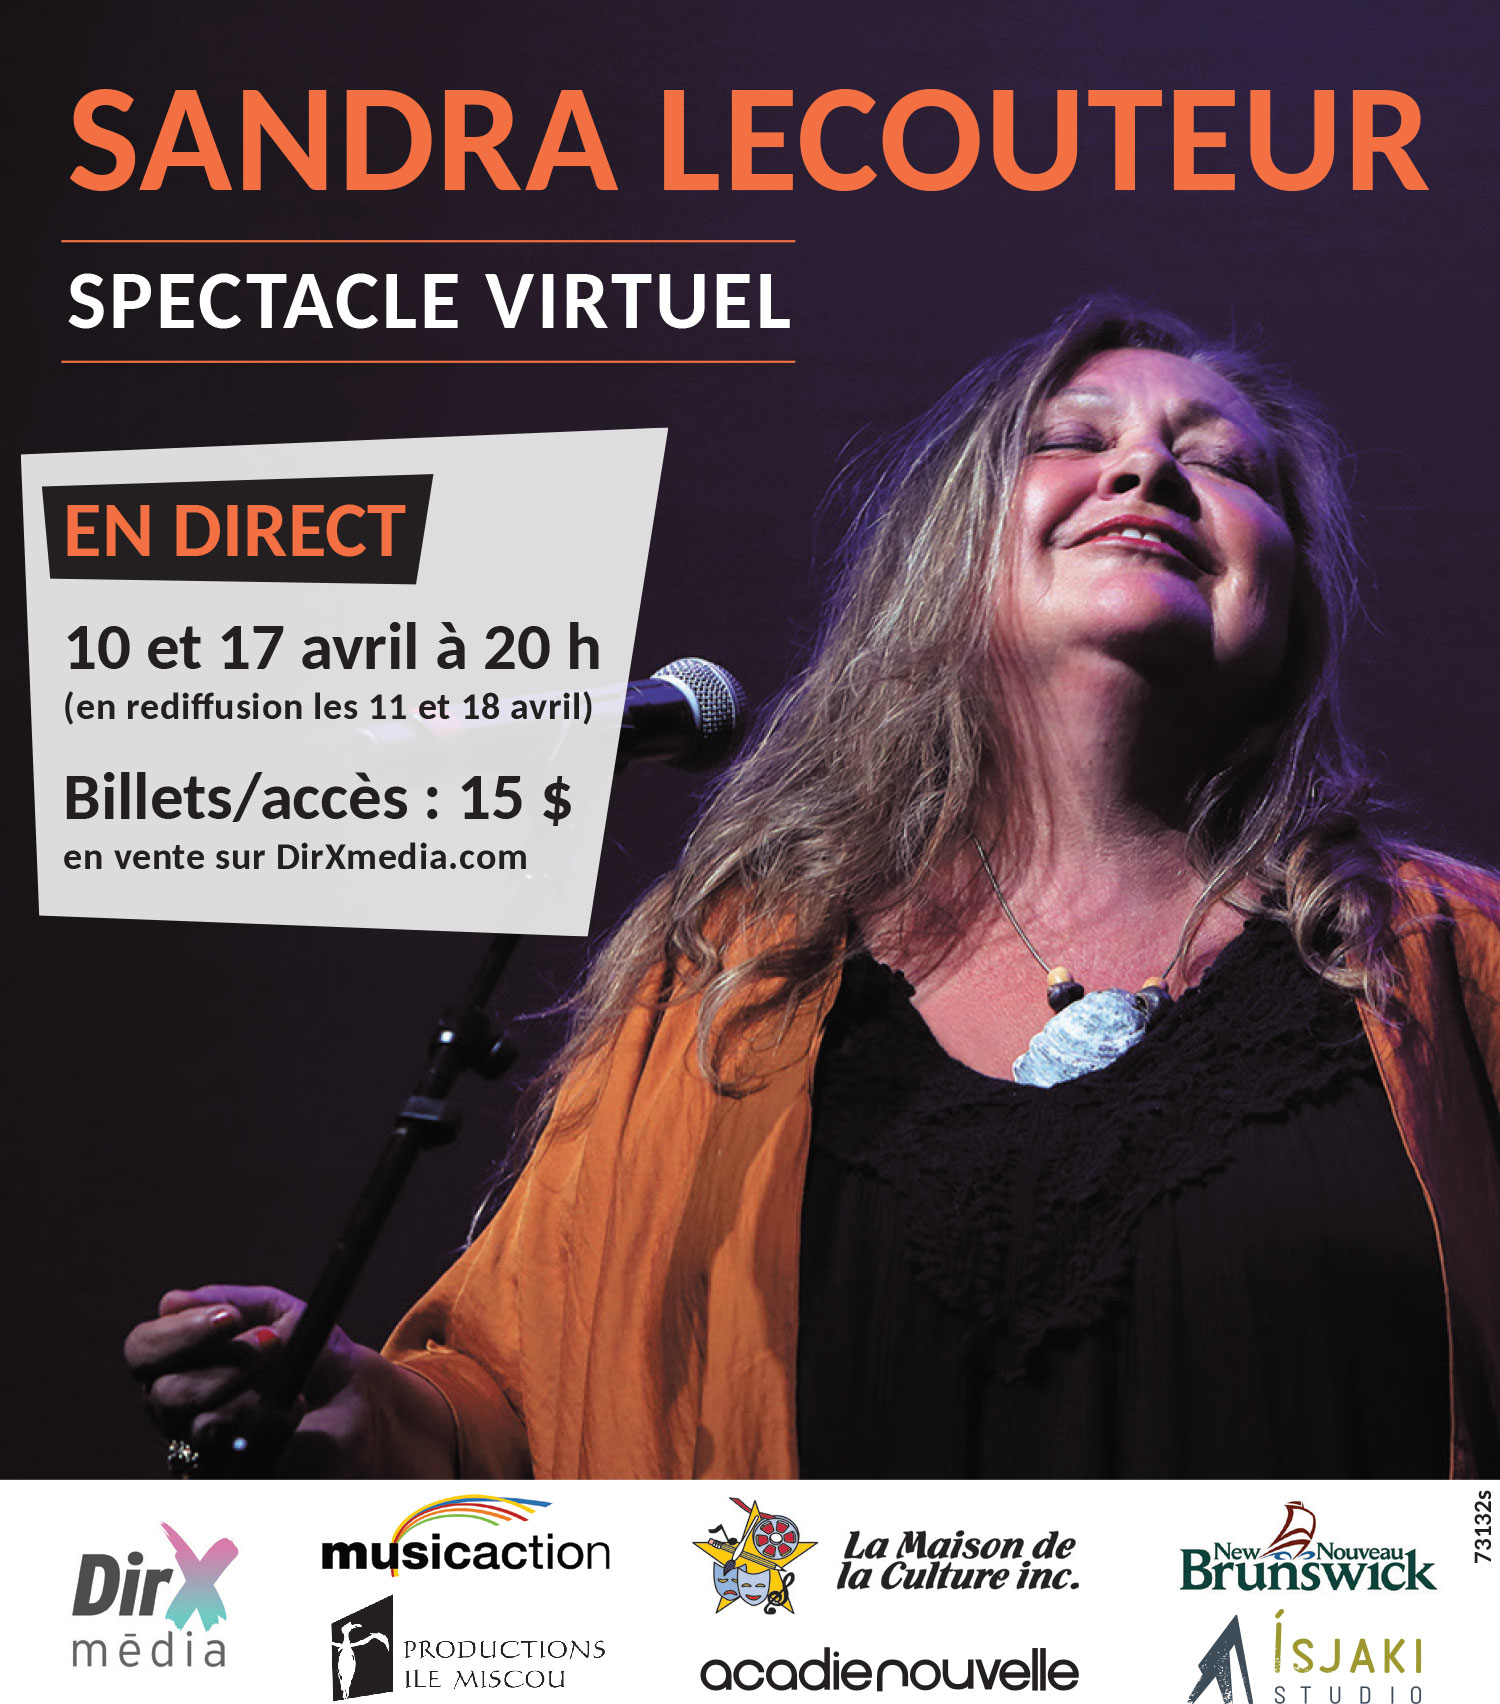 Sandra Le Couteur en spectacle virtuelle sur la plateforme DirXmédia